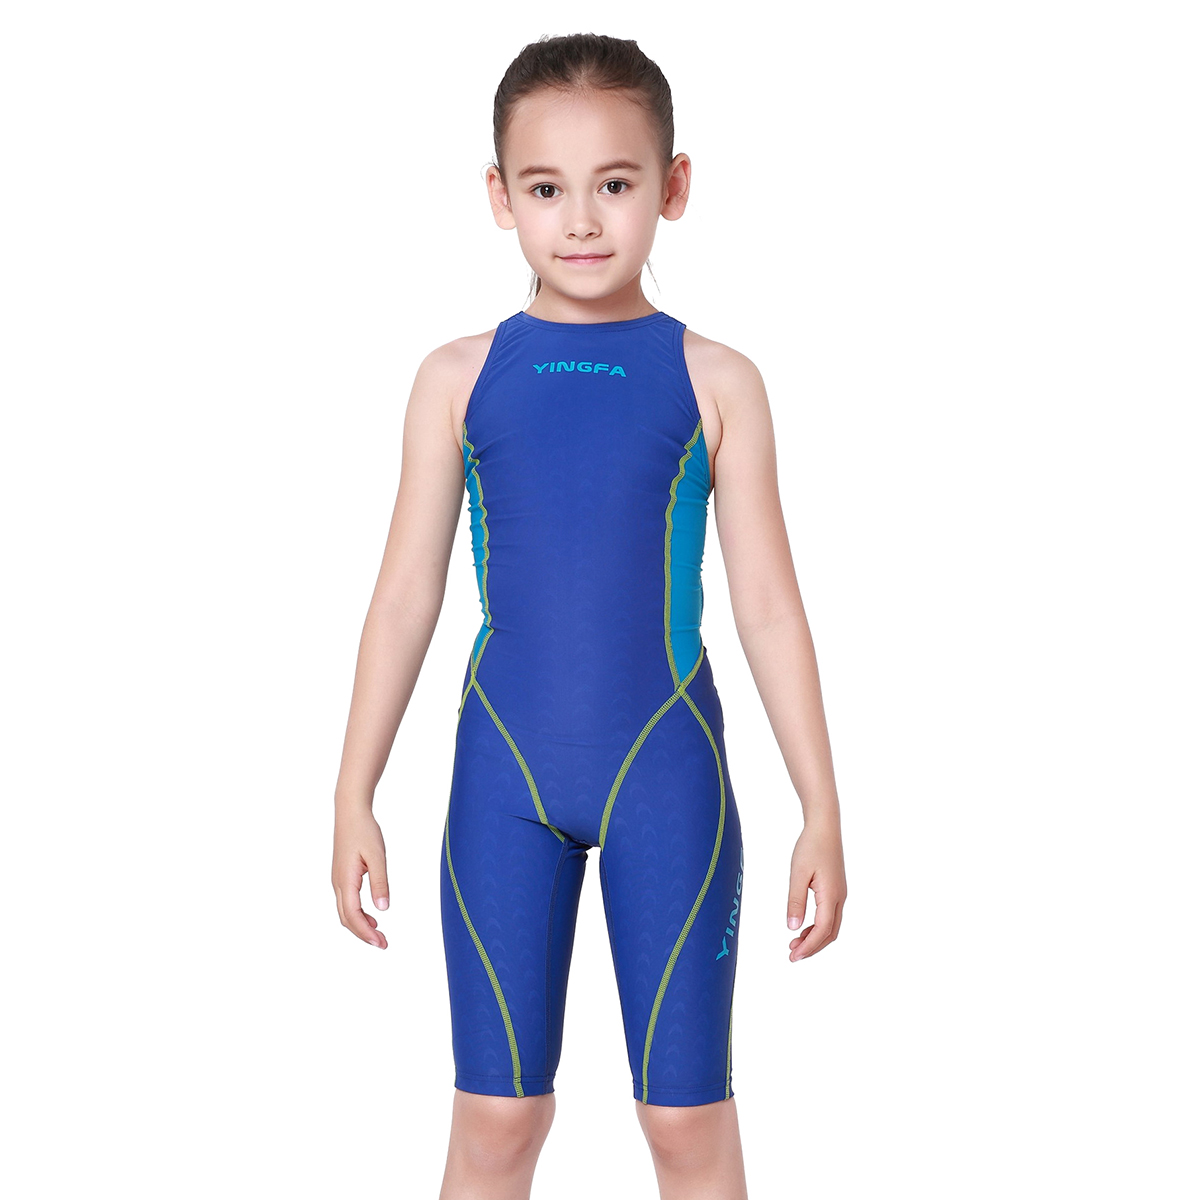 英发儿童泳衣仿生鲨鱼皮专业比赛女士连体游泳衣成人防水环保面料